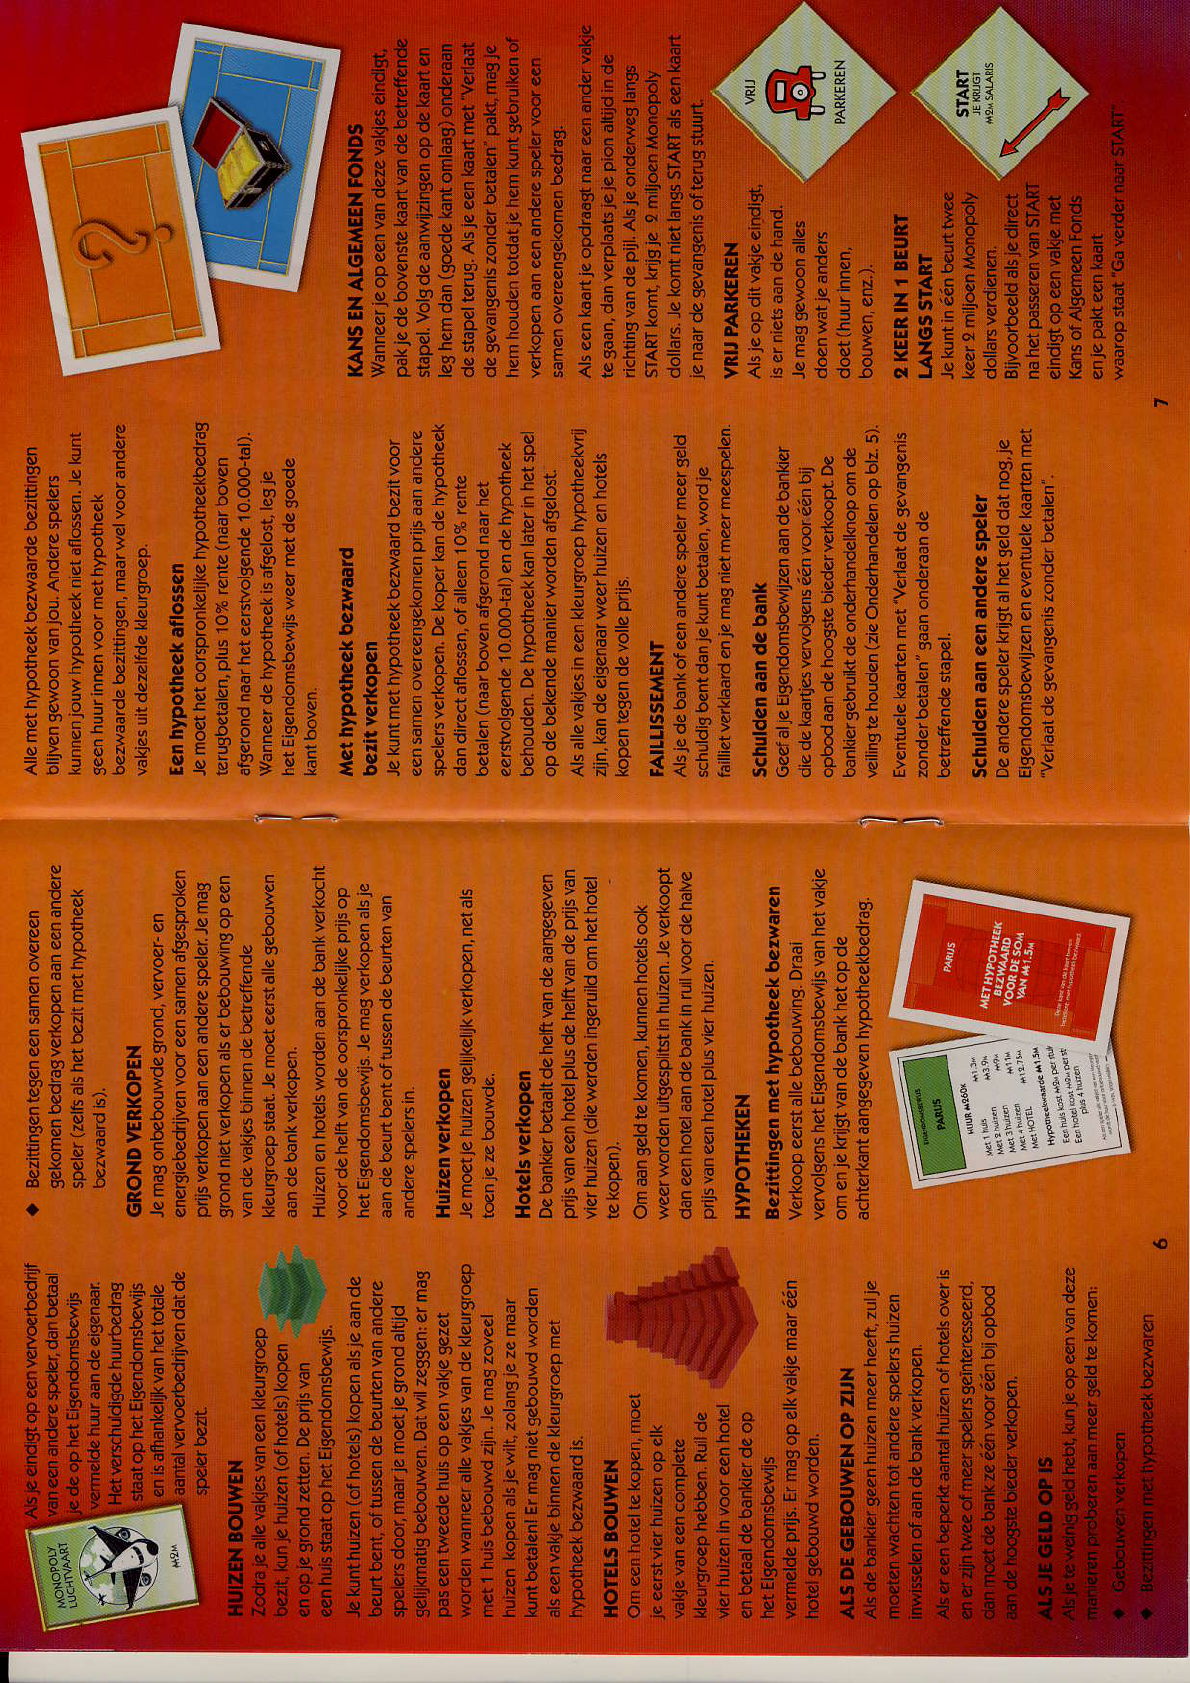 Justitie Niet genoeg Opmerkelijk Manual Hasbro Monopoly Wereldeditie (page 1 of 6) (Dutch)